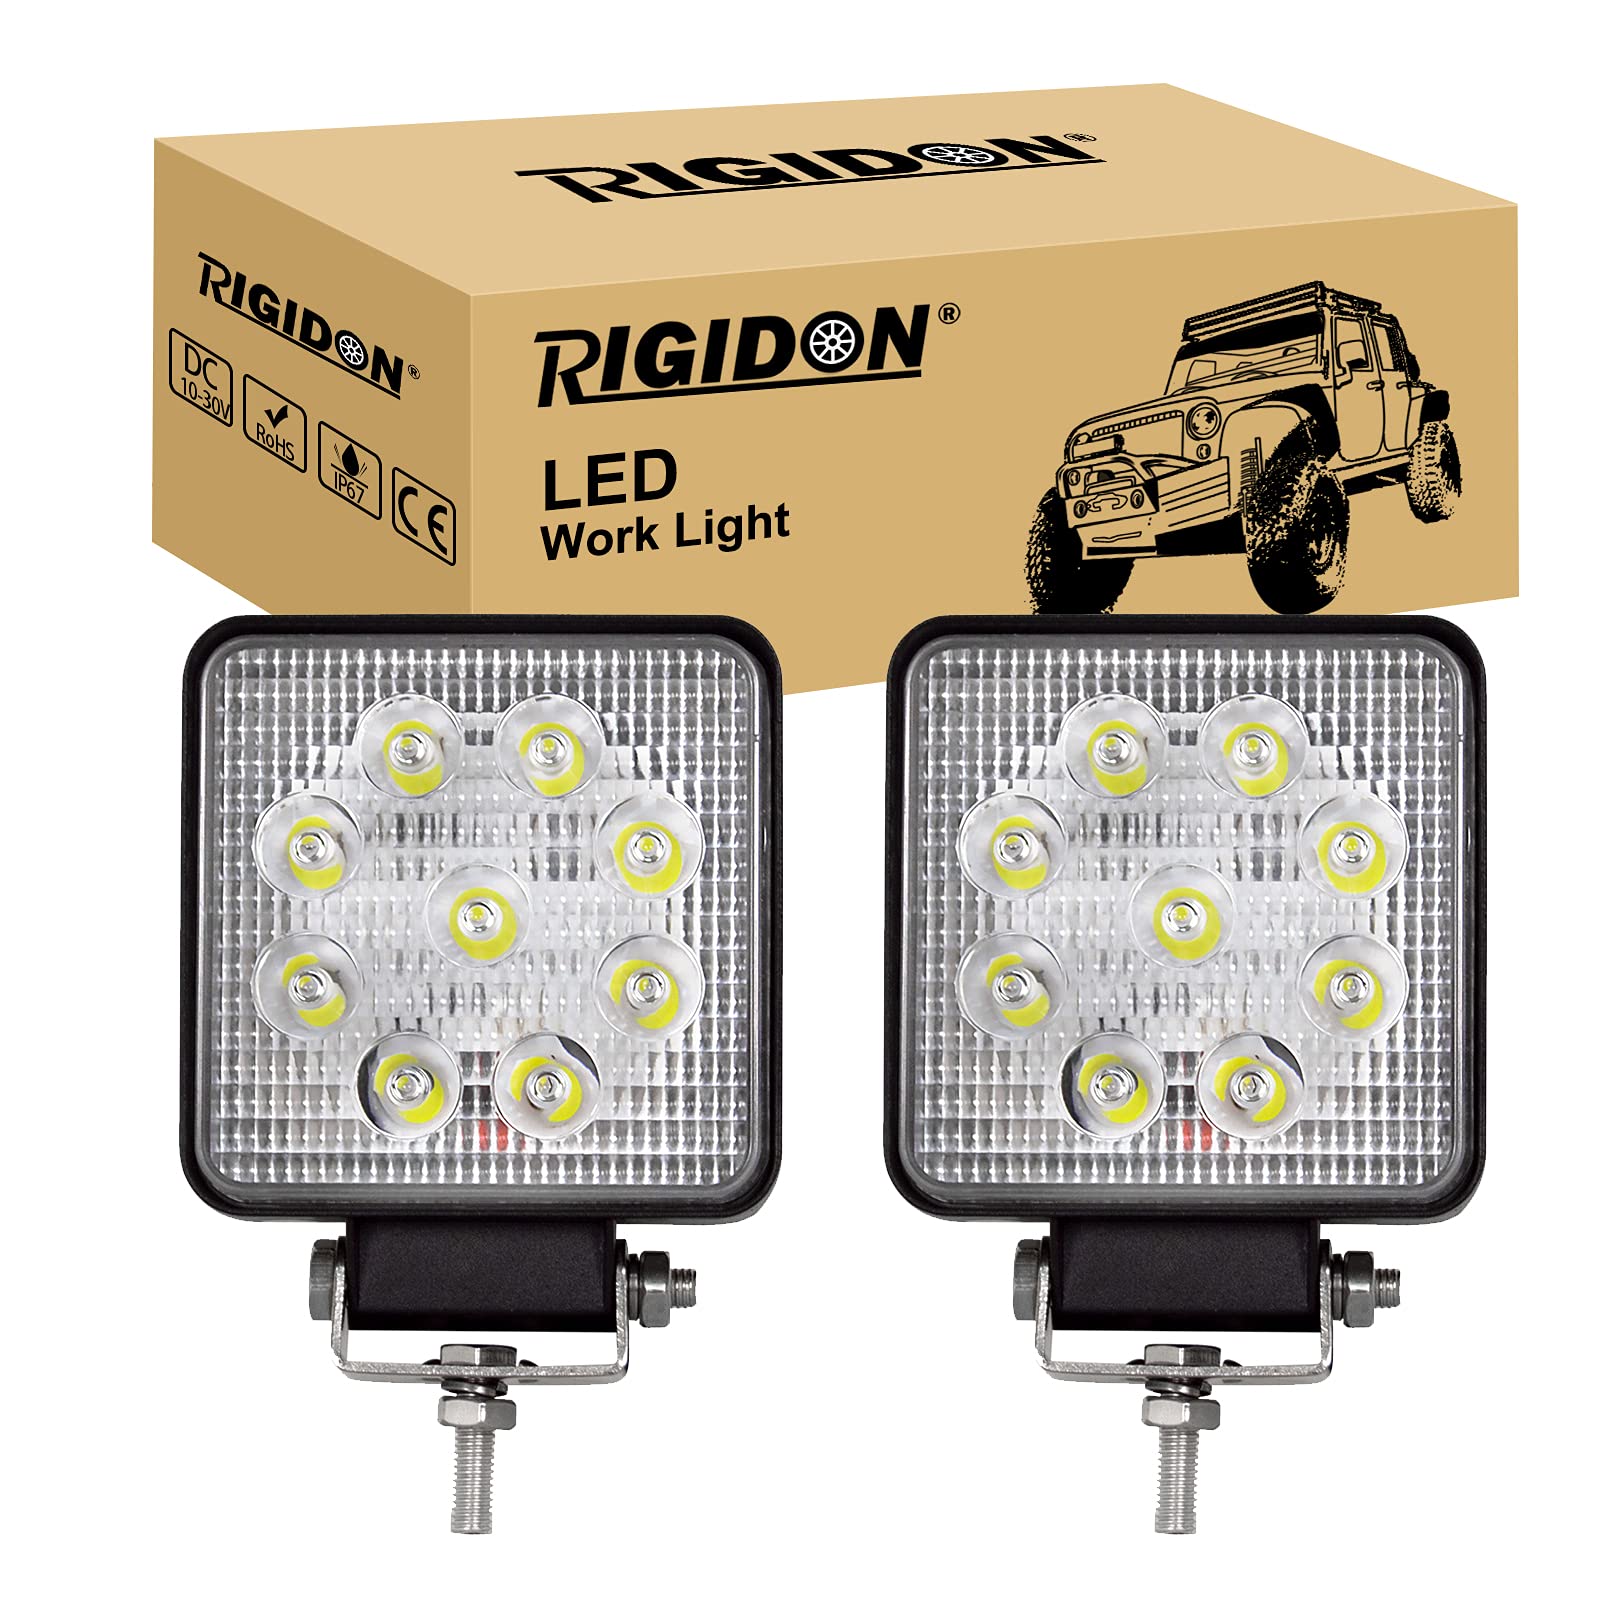 RIGIDON 2 Pcs Auto quad scheinwerfer, 4 Zoll 10cm 27W Spot Strahler offroad beleuchtung für SUV ATV, Traktor, LKW, 4x4, 6000K Weiß led nebelscheinwerfer, led arbeitsscheinwerfer, led arbeitslicht von RIGIDON